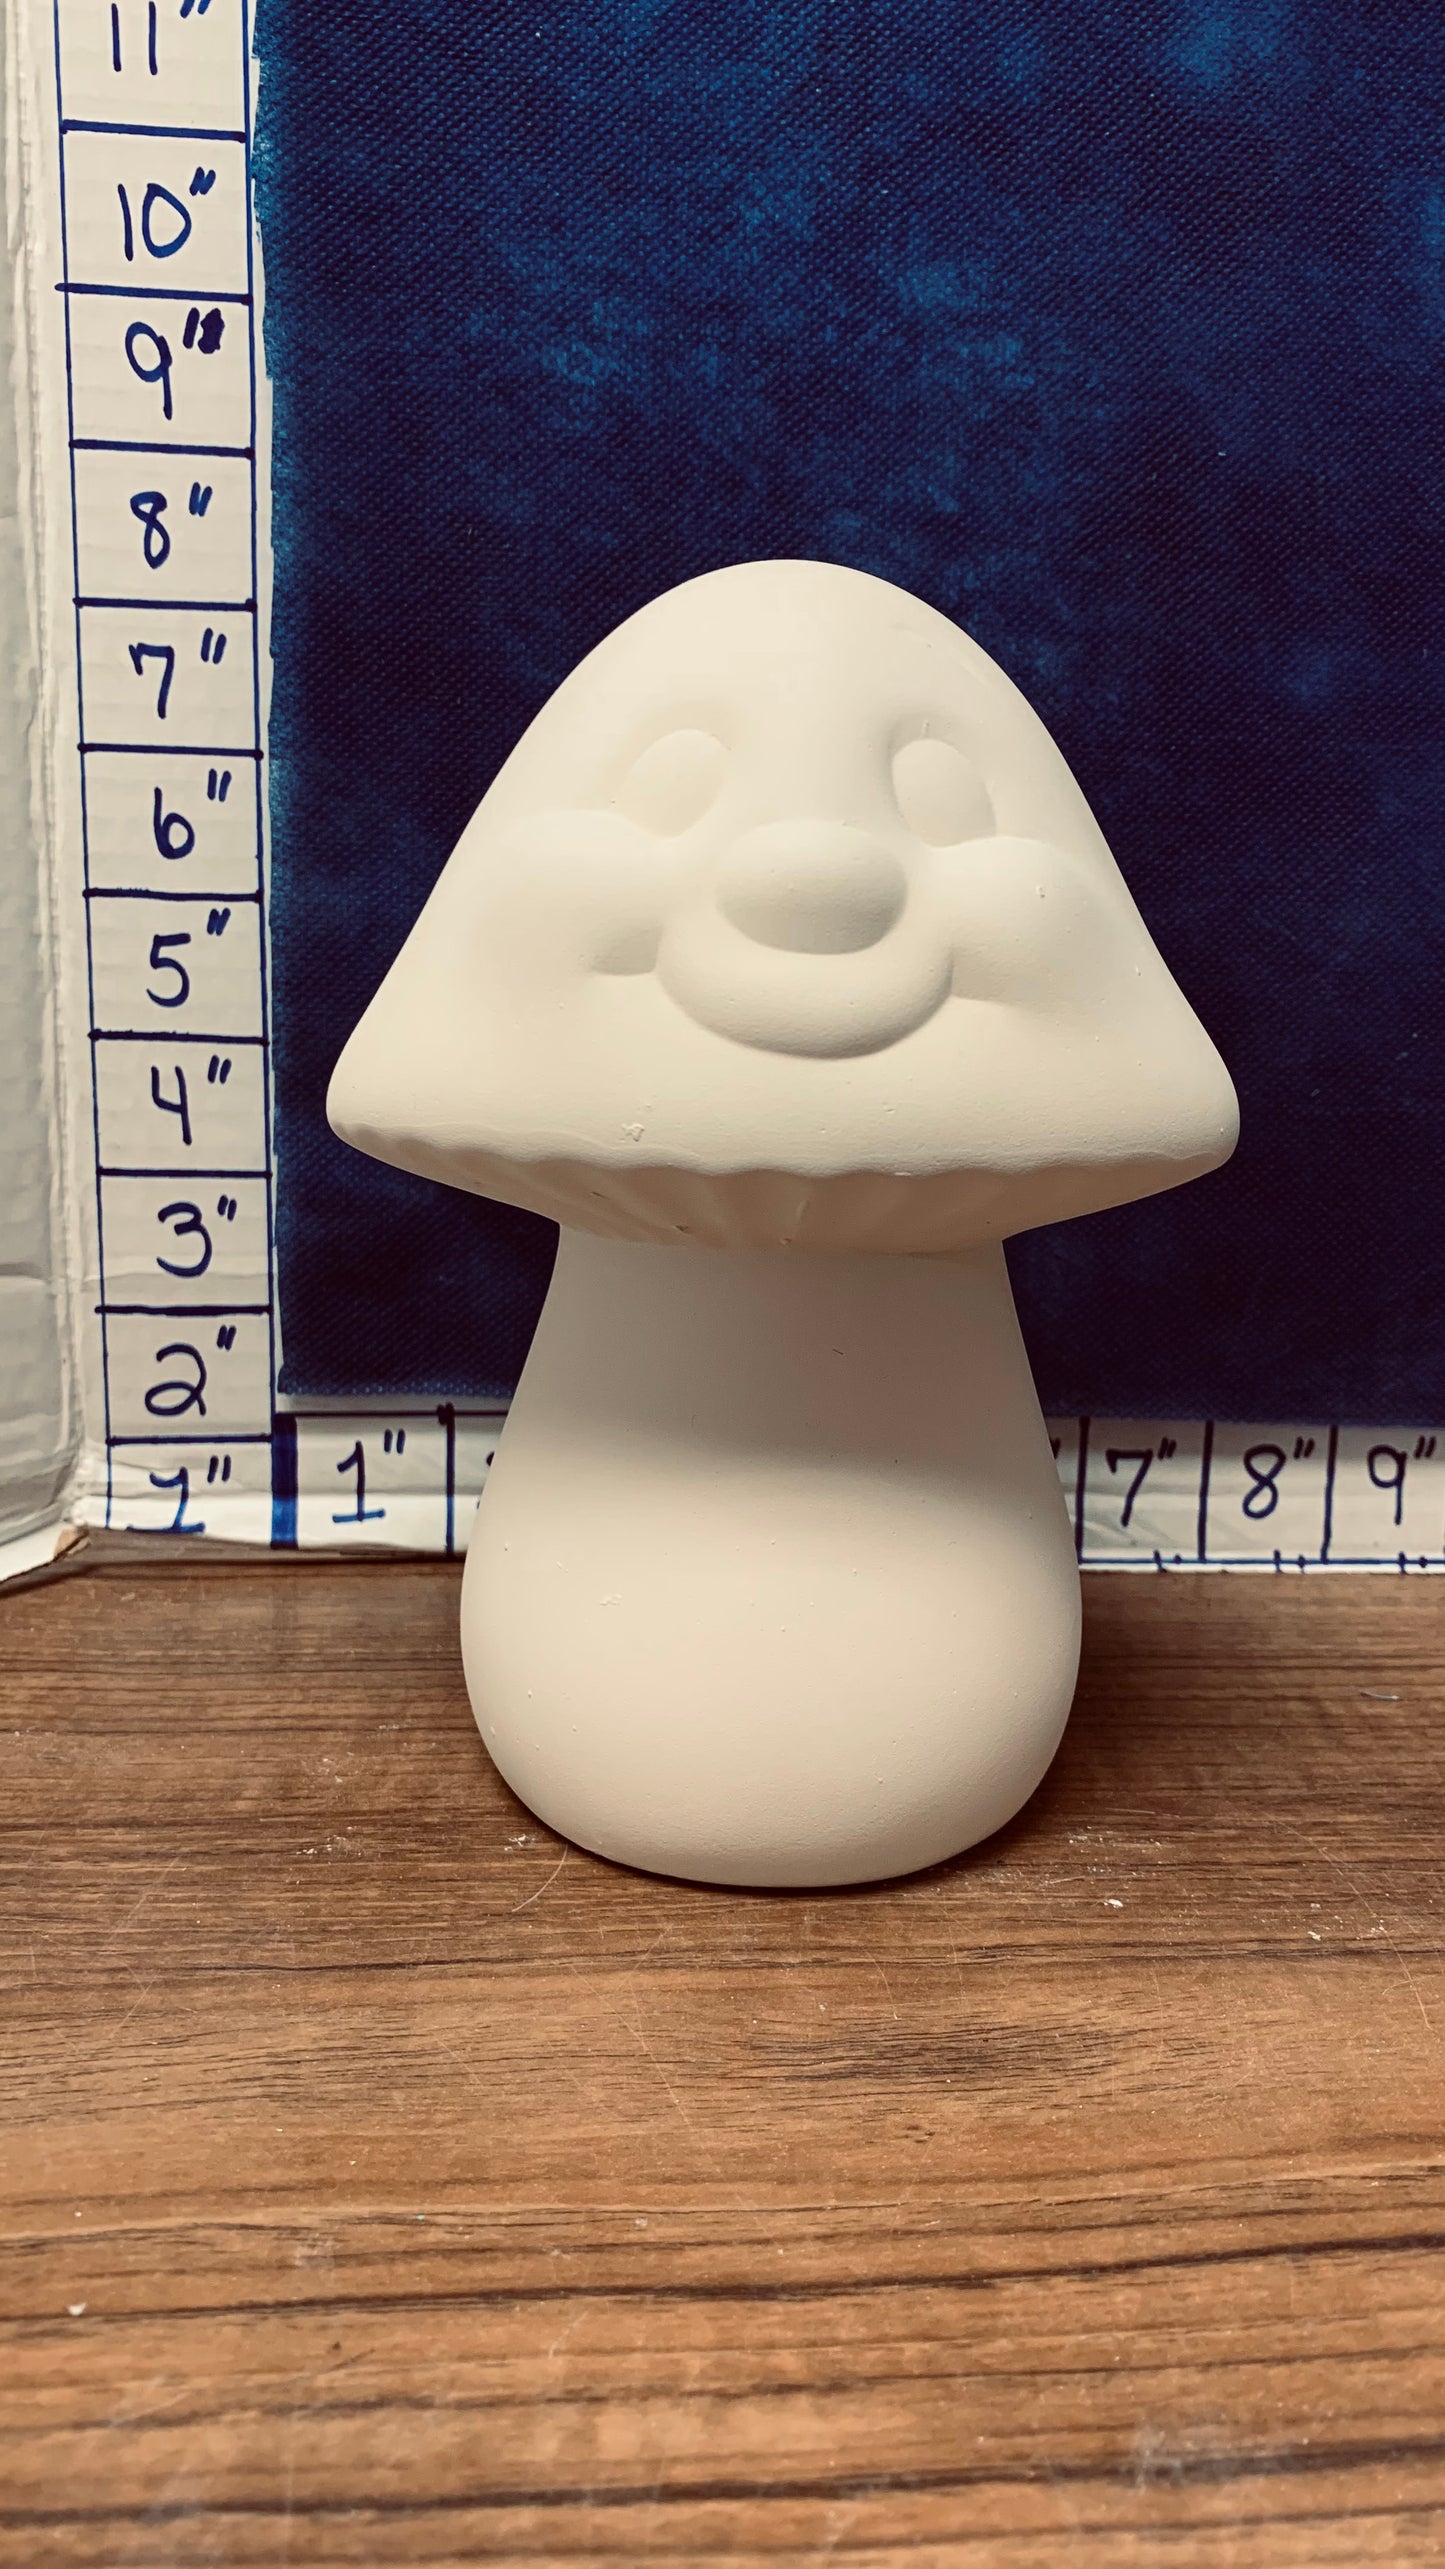 Mushroom face small